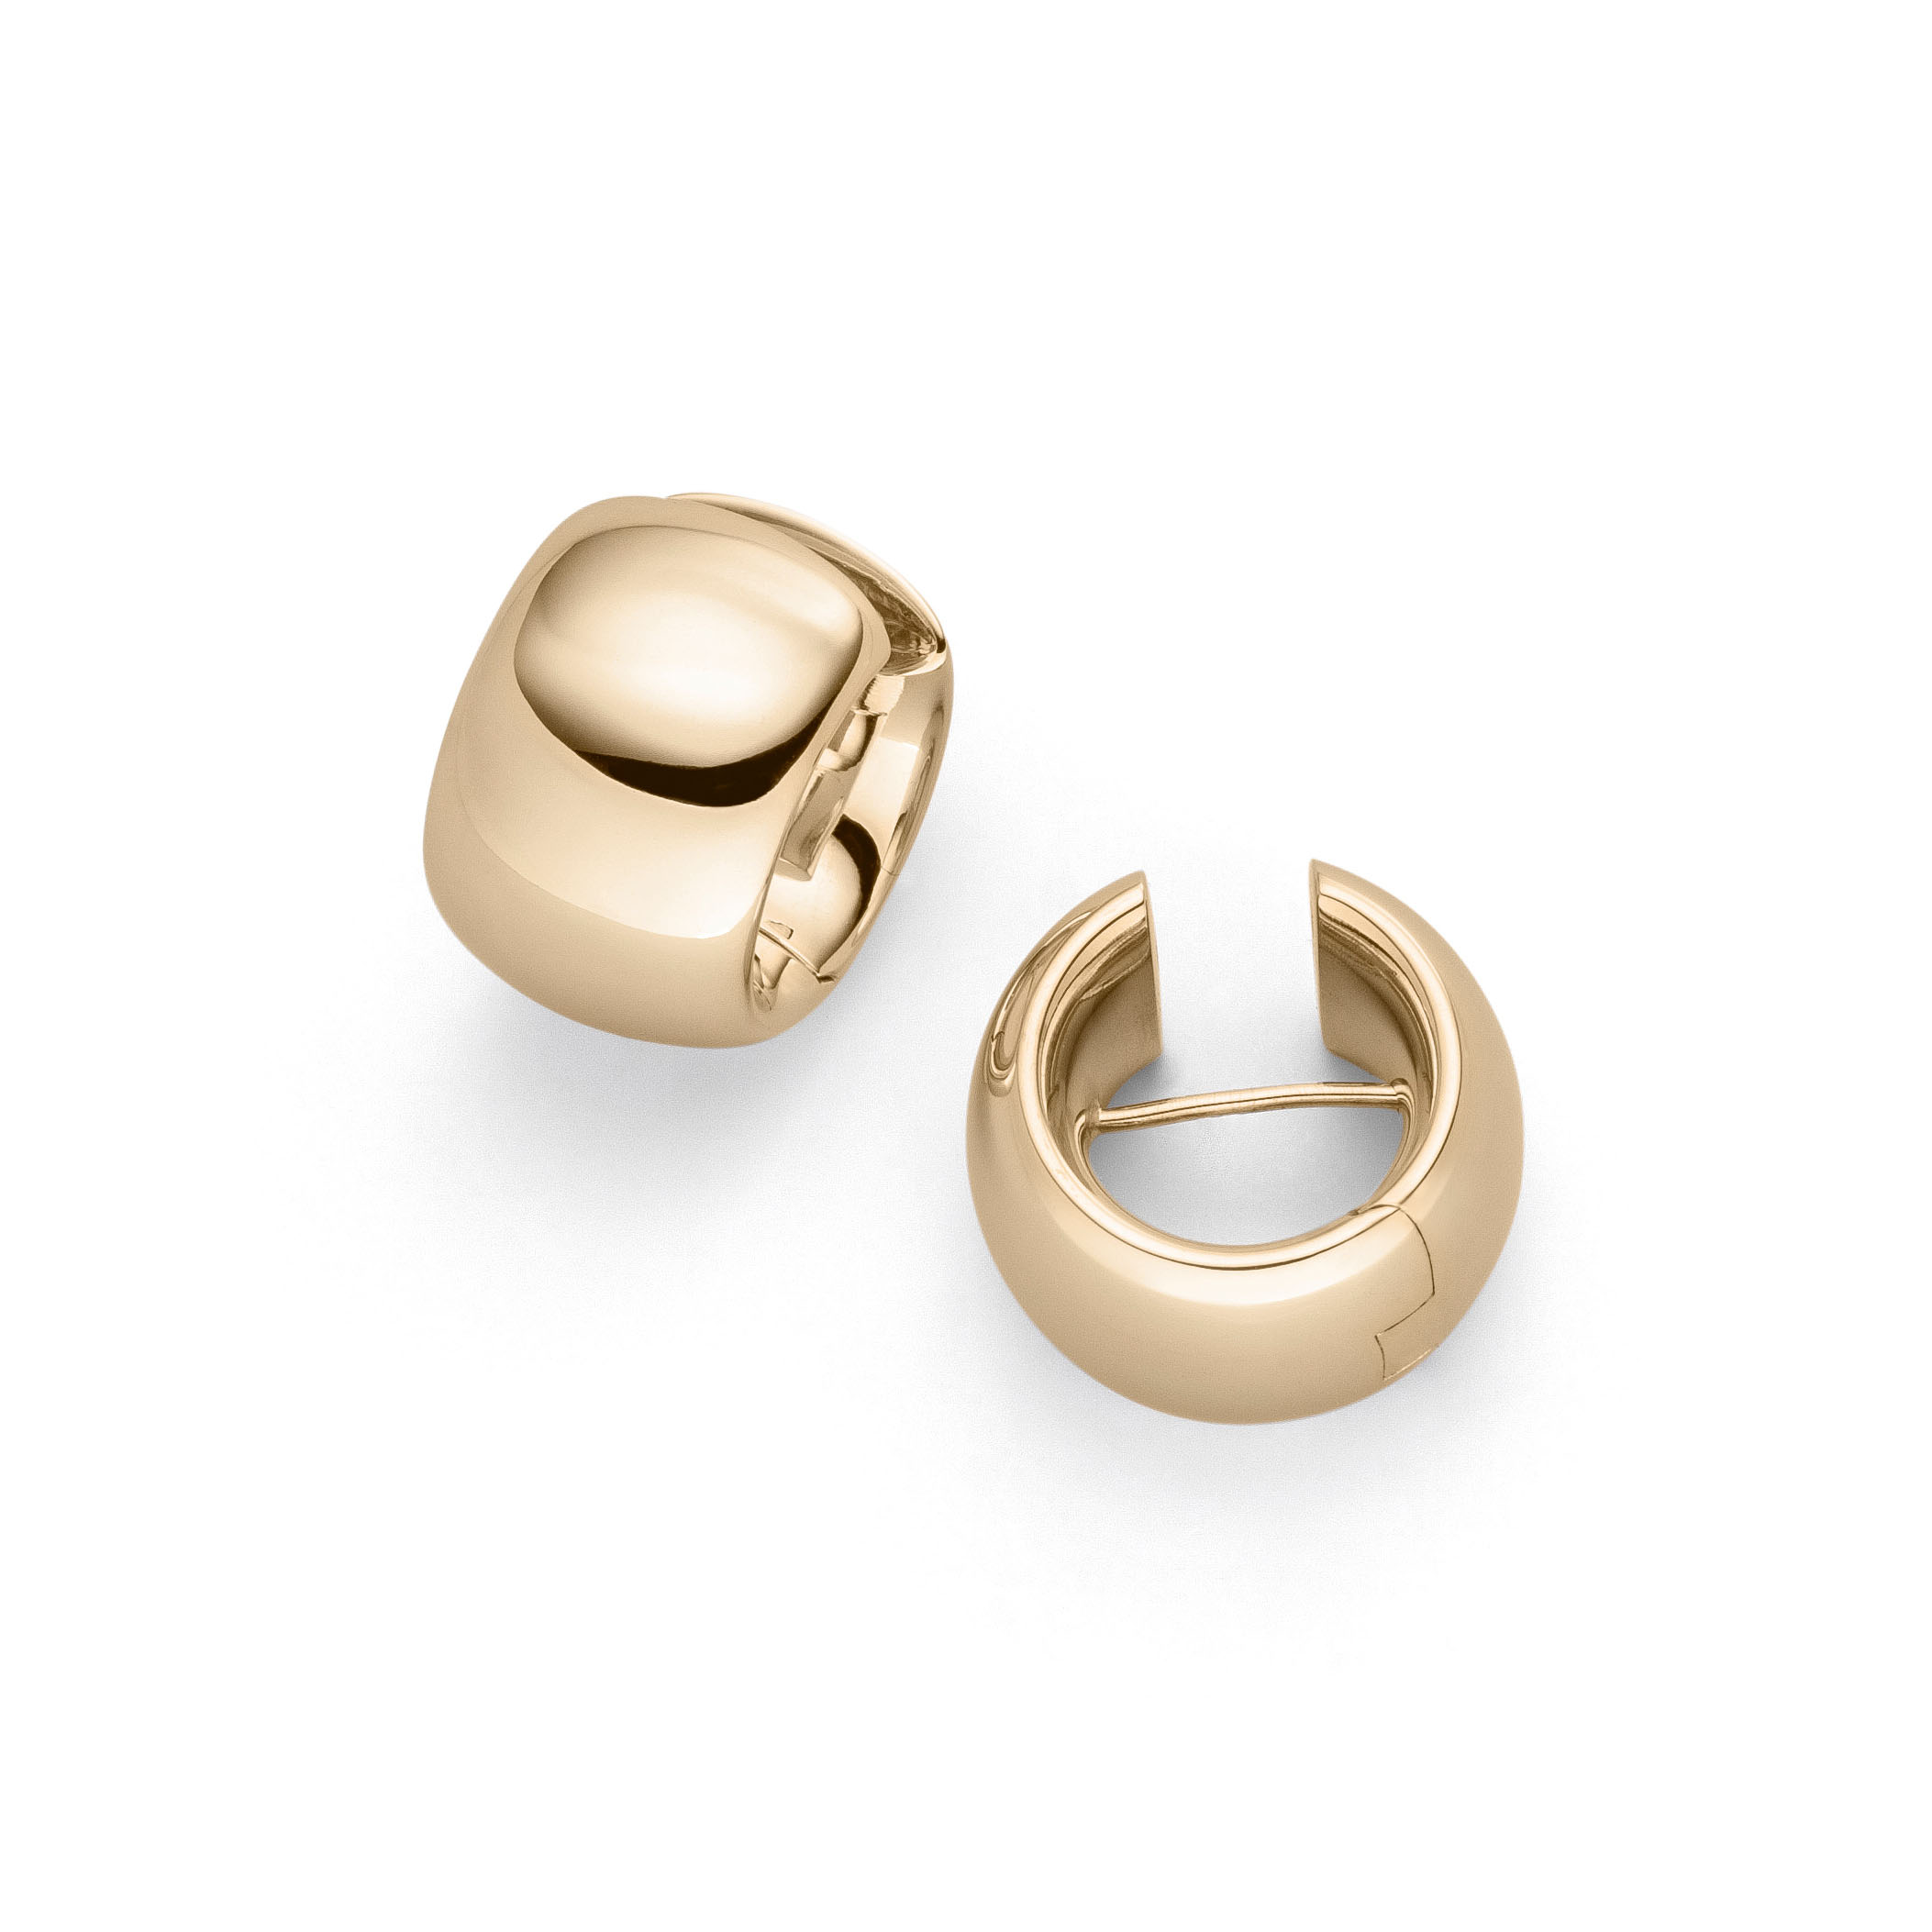 Wholesale OEM/ODM Jewelry Custom gold plated silver earrings ear studs ...